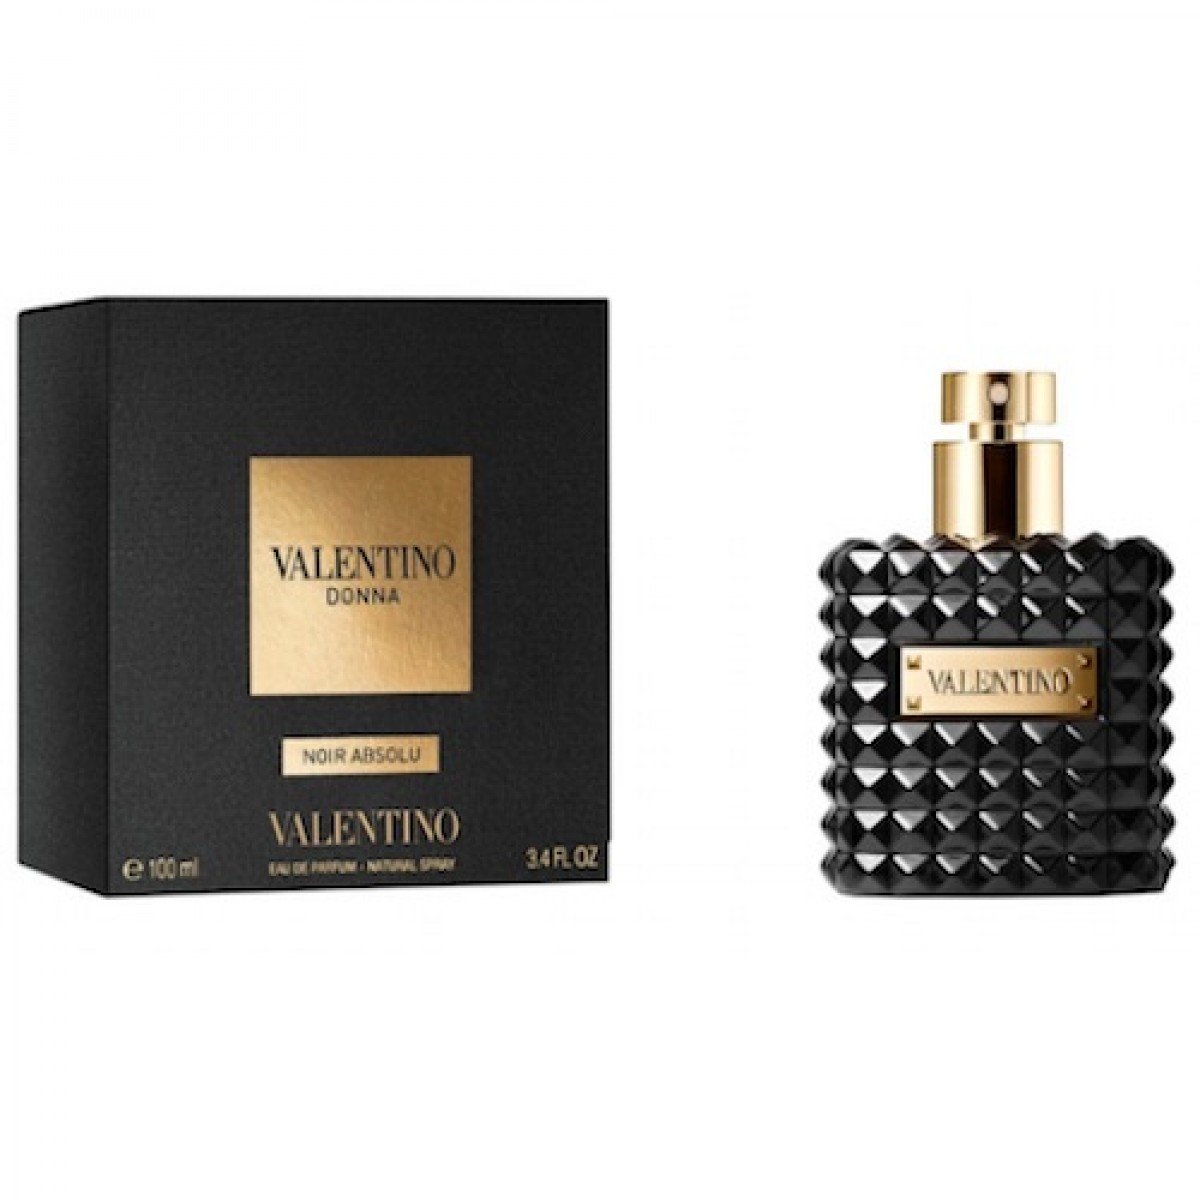 Valentino Donna Noir Absolu Eau de Parfum 100ml - D'Scentsation